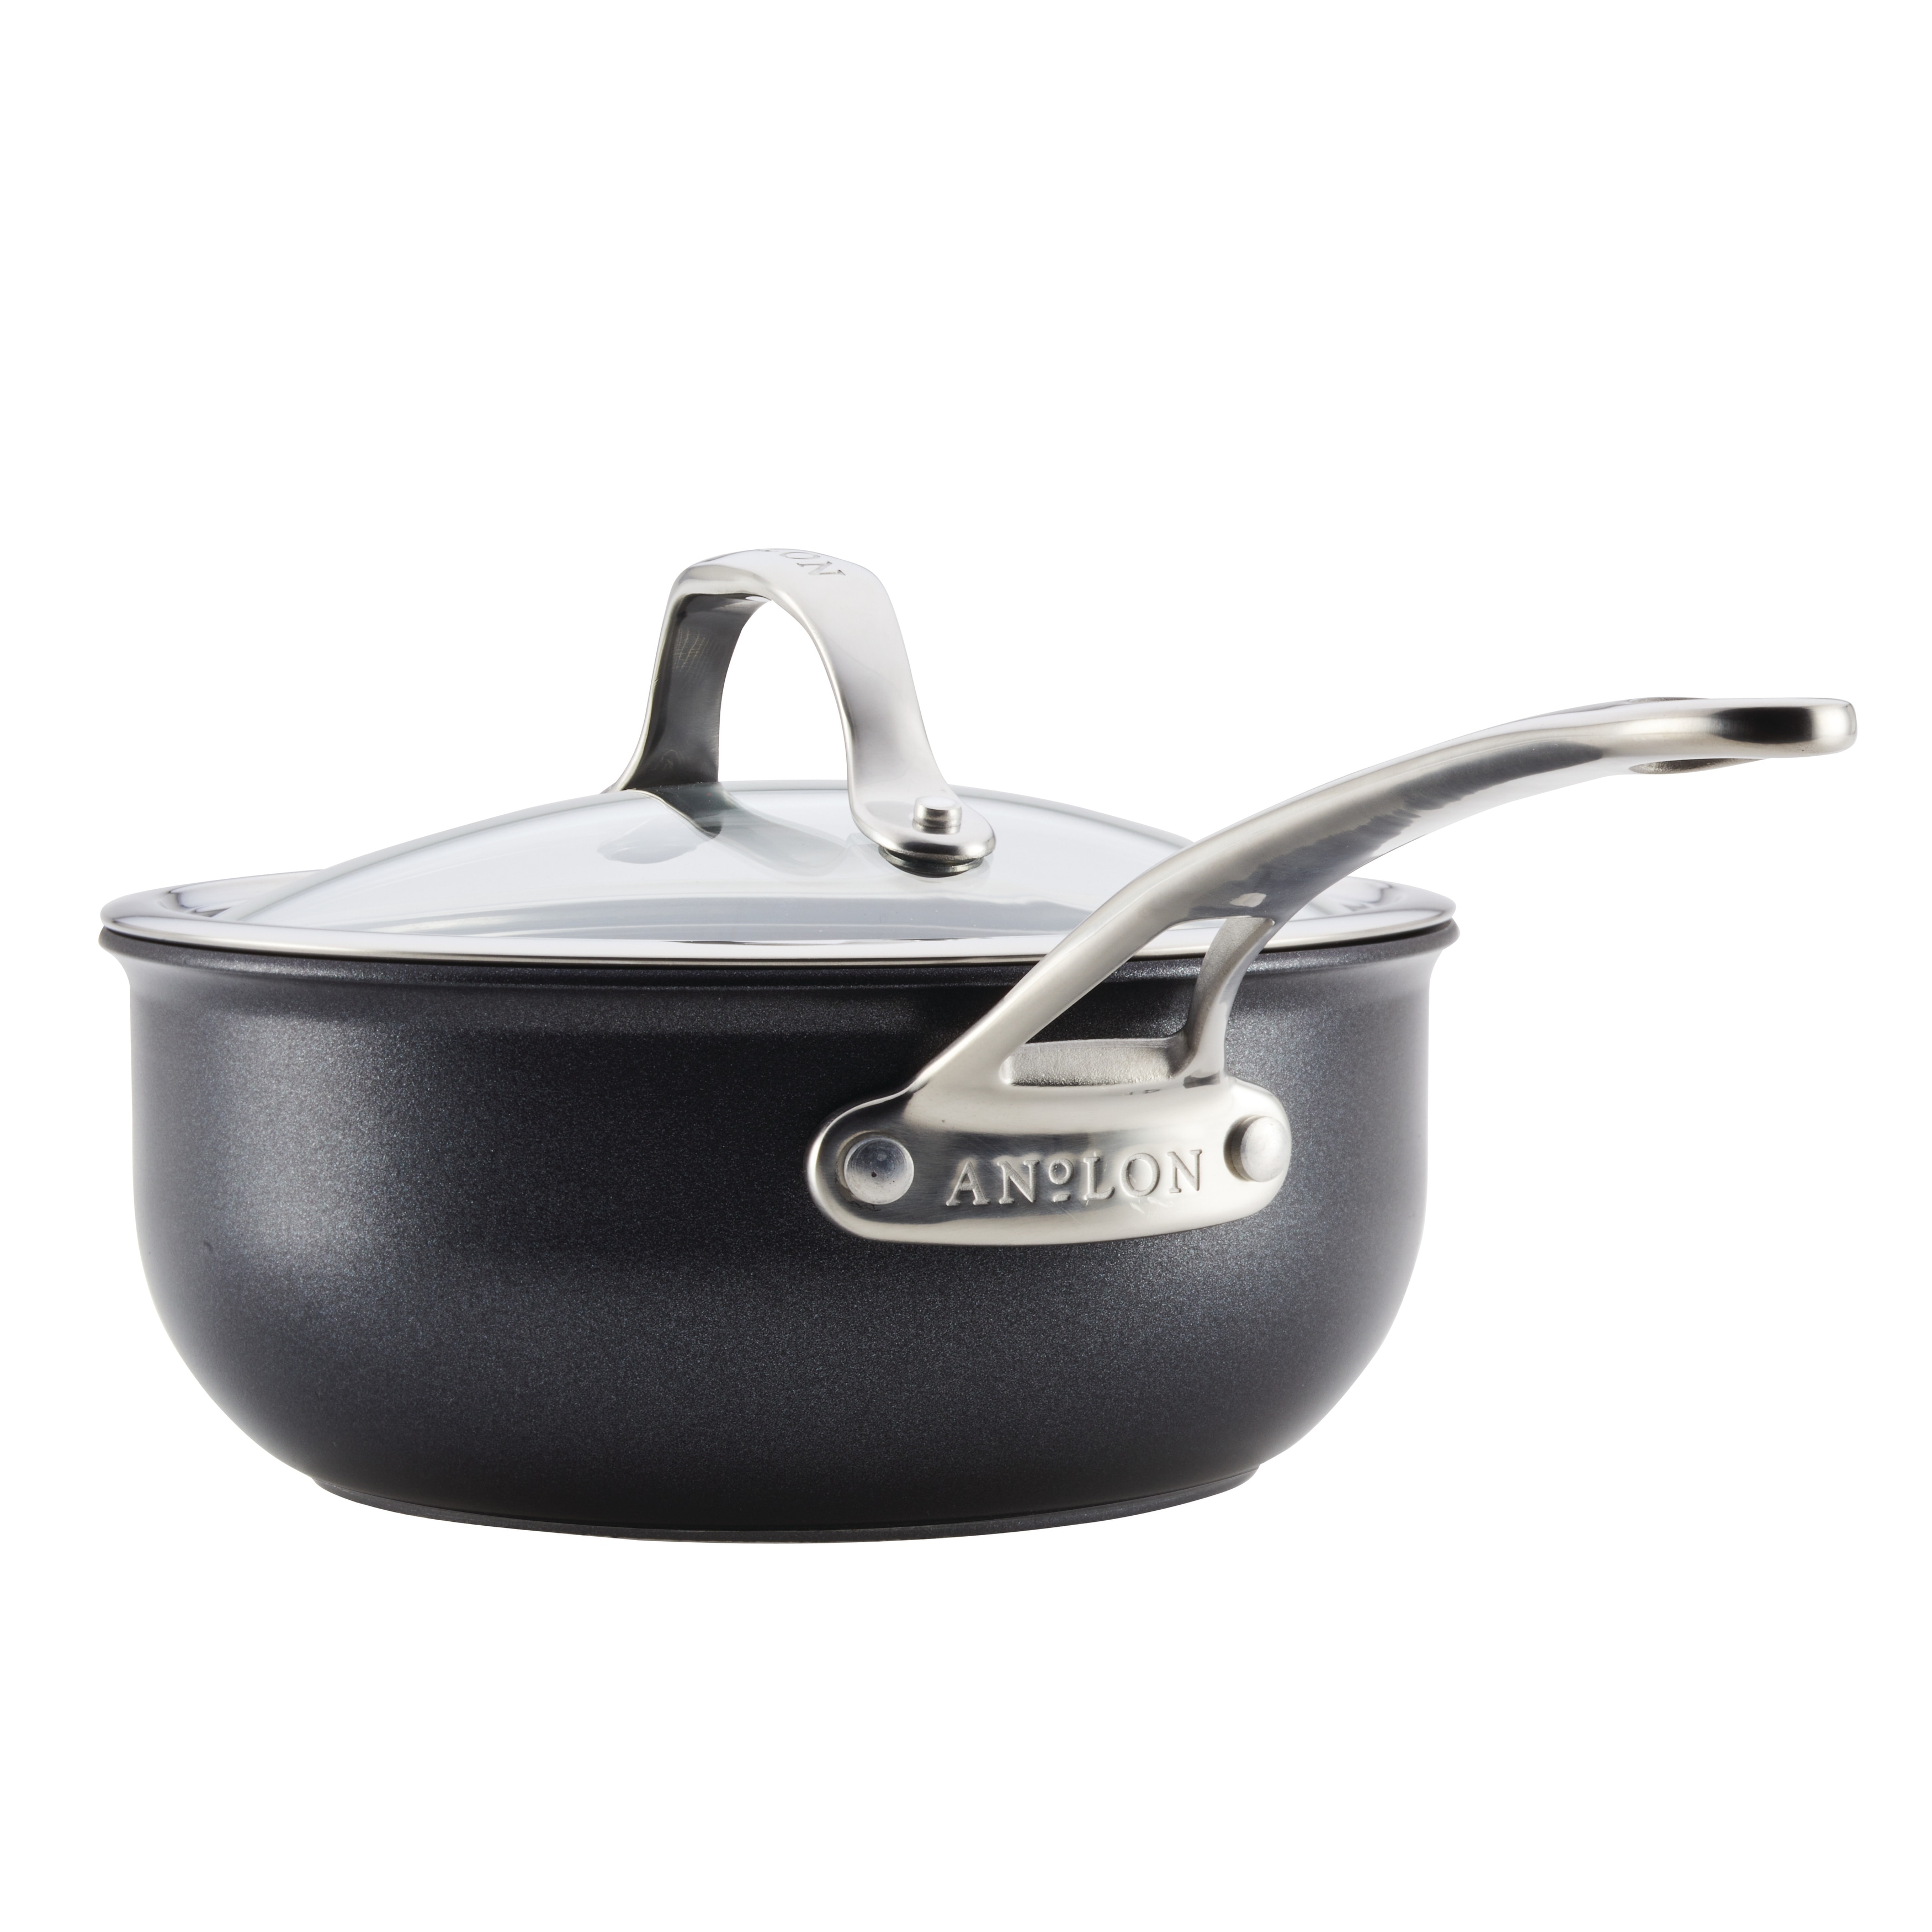 Anolon X SearTech Aluminum Nonstick Cookware Saucepan with Lid, 3-Quart,  Super Dark Gray